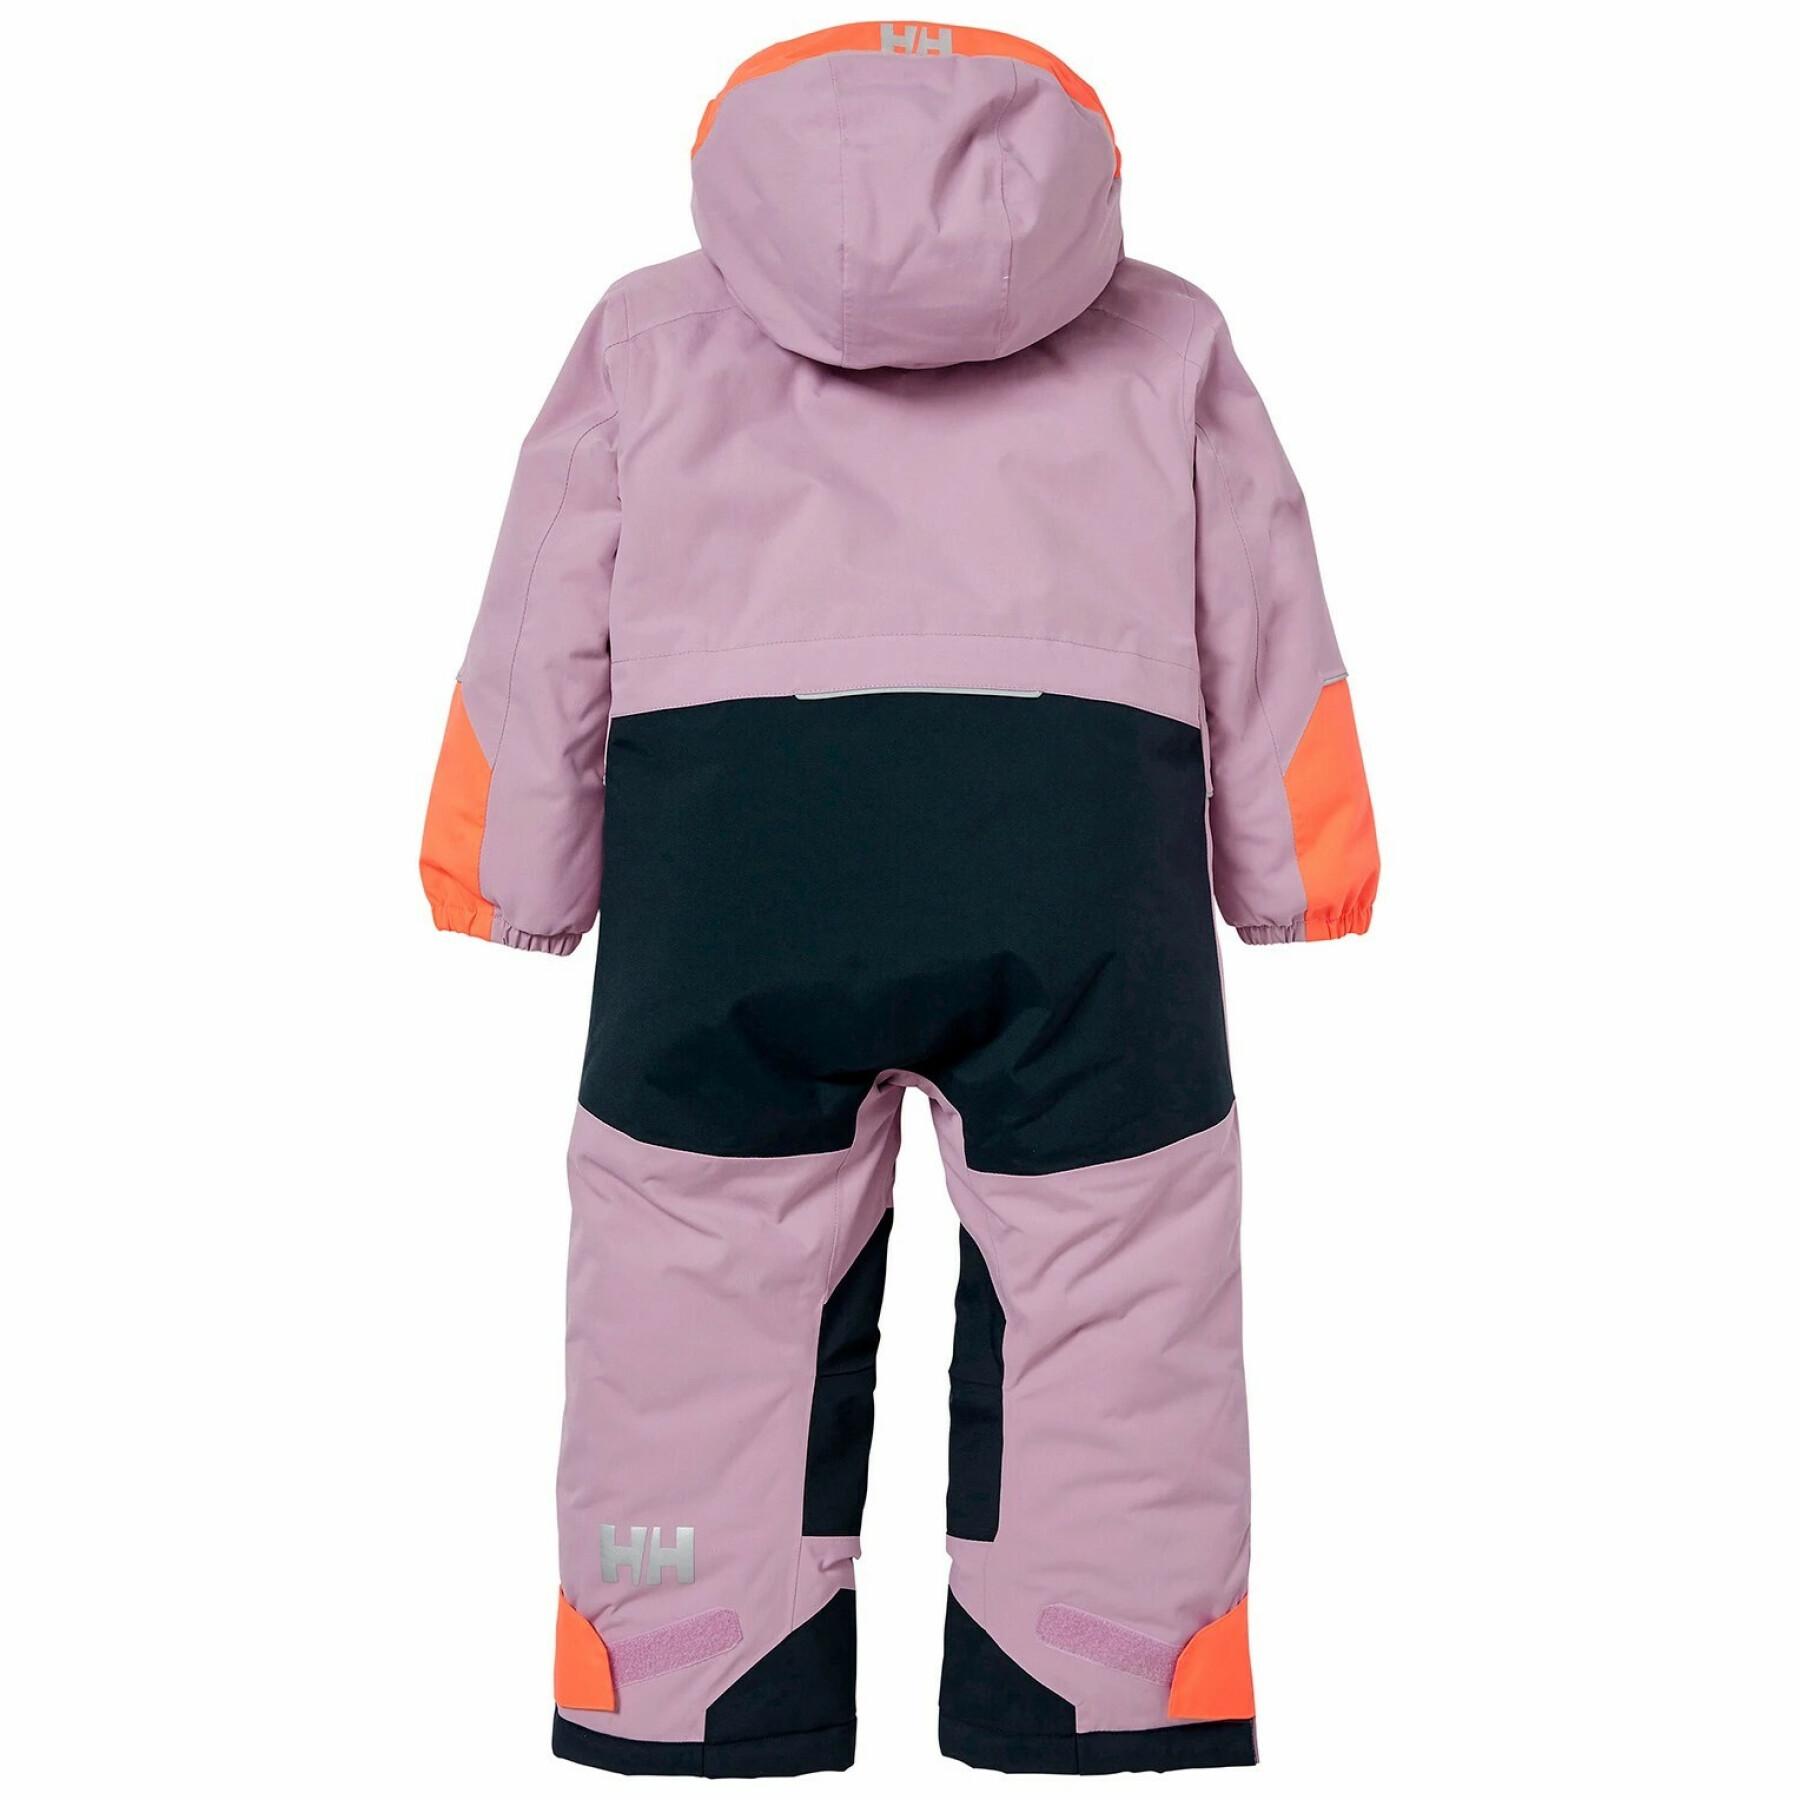 Ski suit for children Helly Hansen Tinden